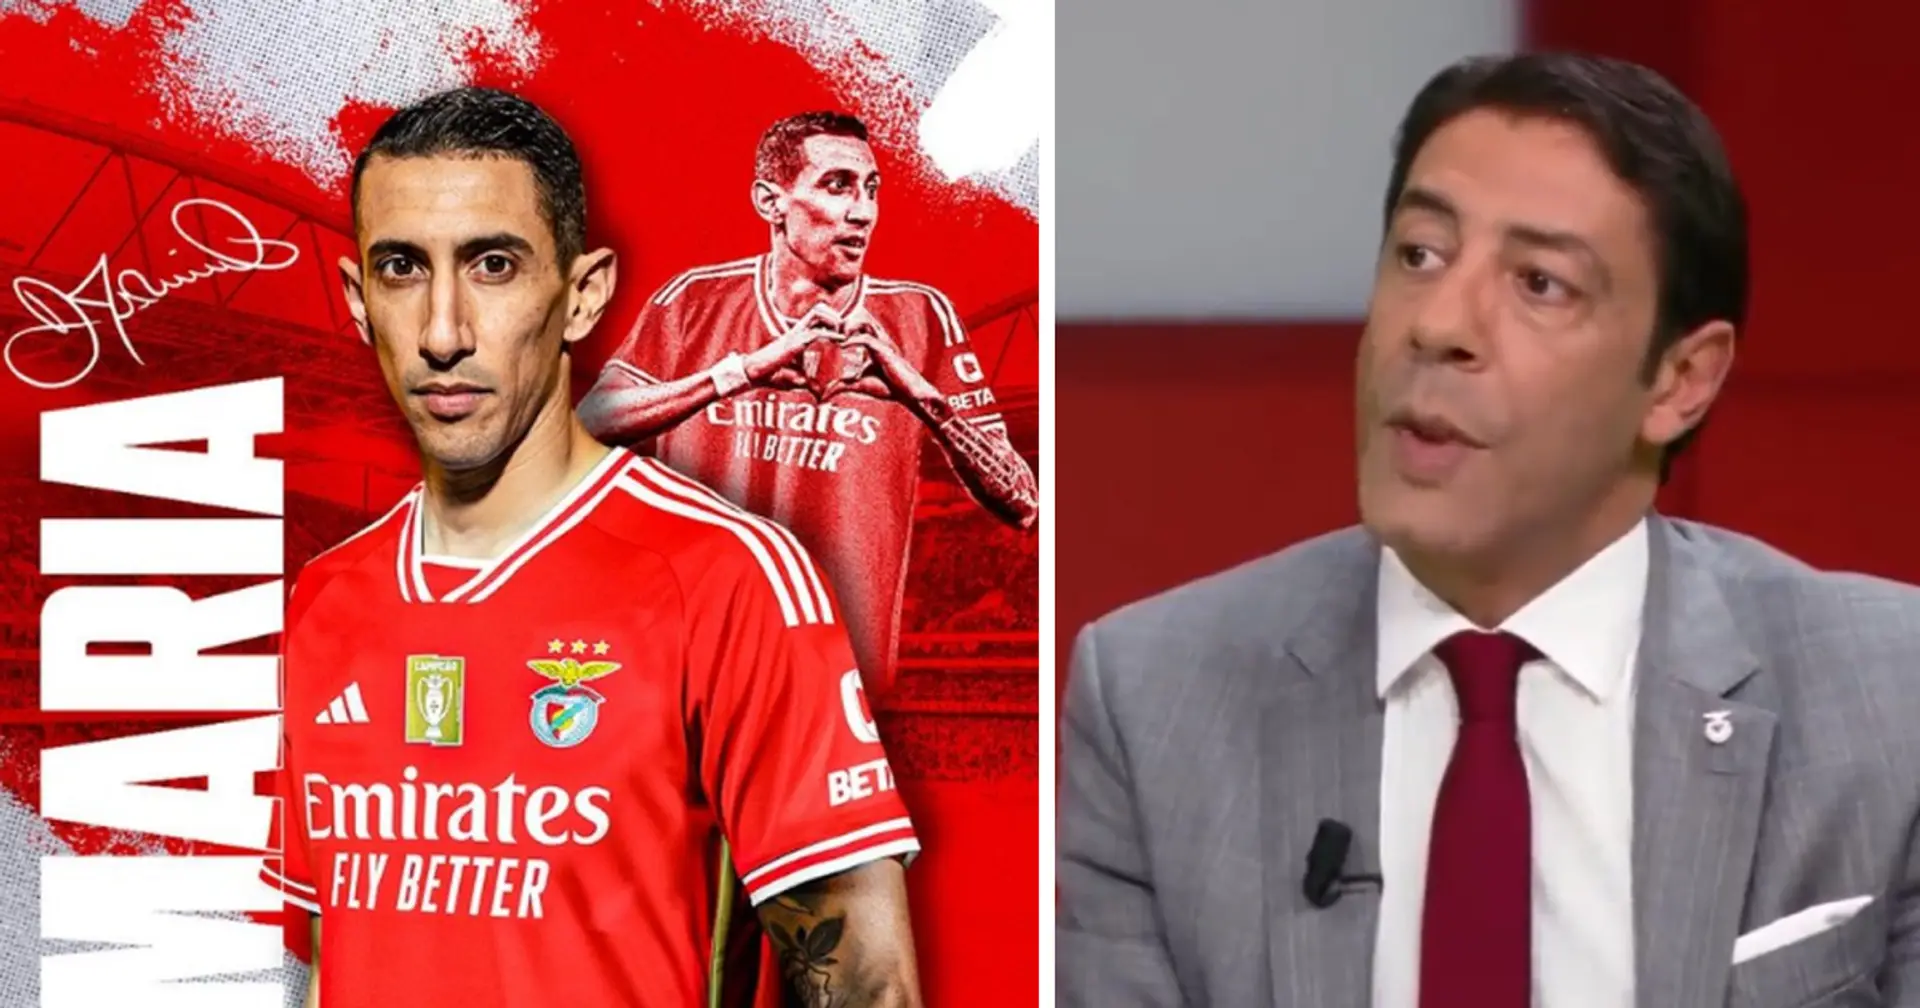 "Il ne voulait pas savoir quel serait son salaire": Rui Costa révèle es détails de la négociation entre Benfica et Di Maria